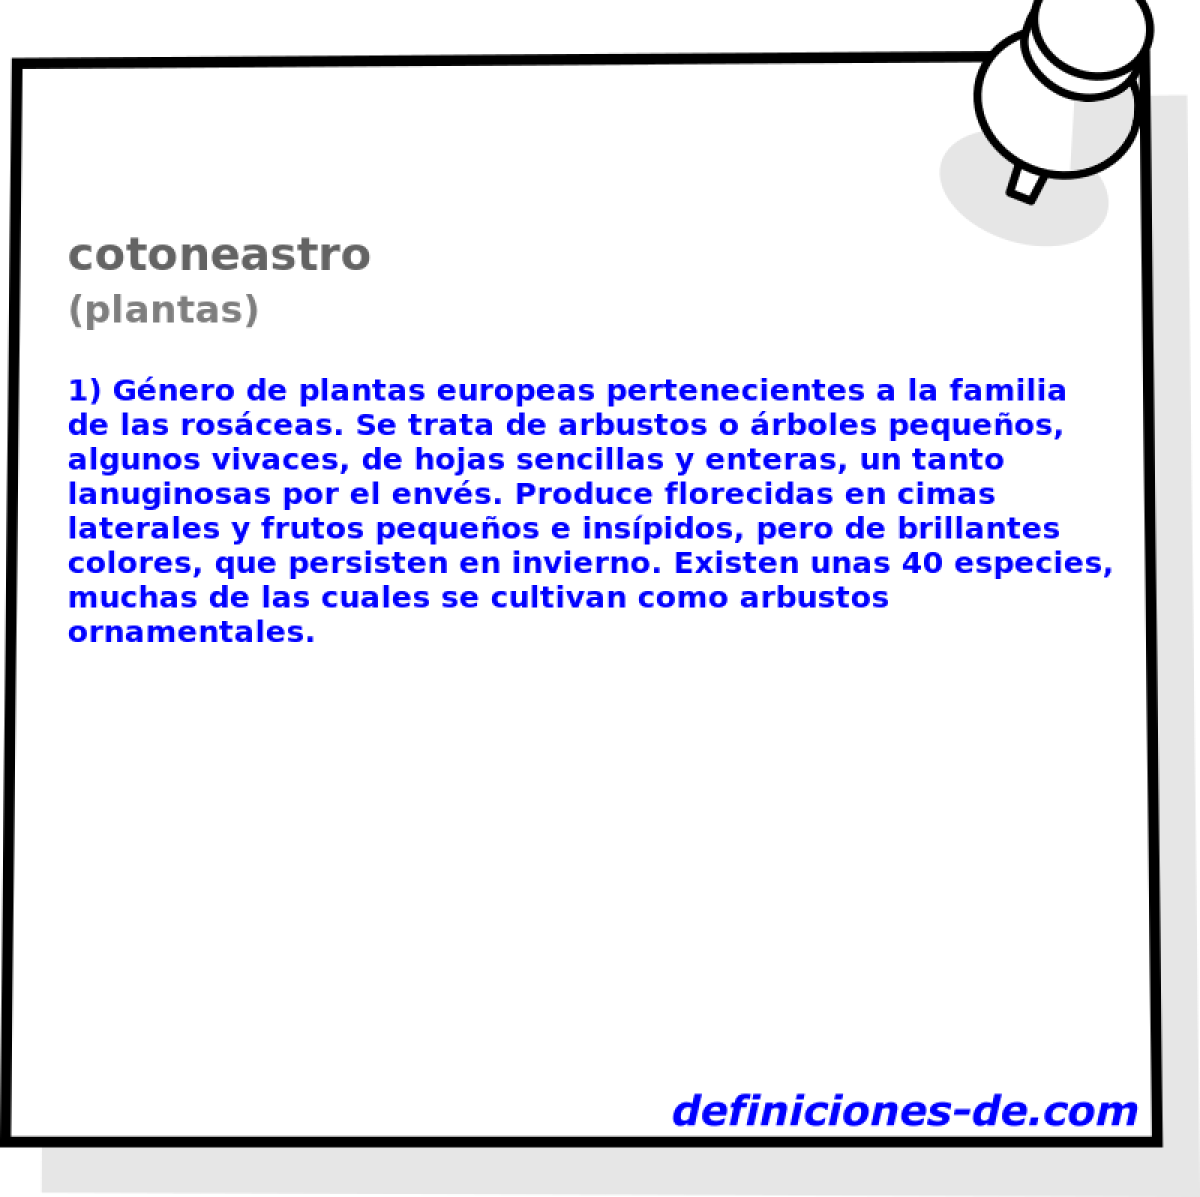 cotoneastro (plantas)